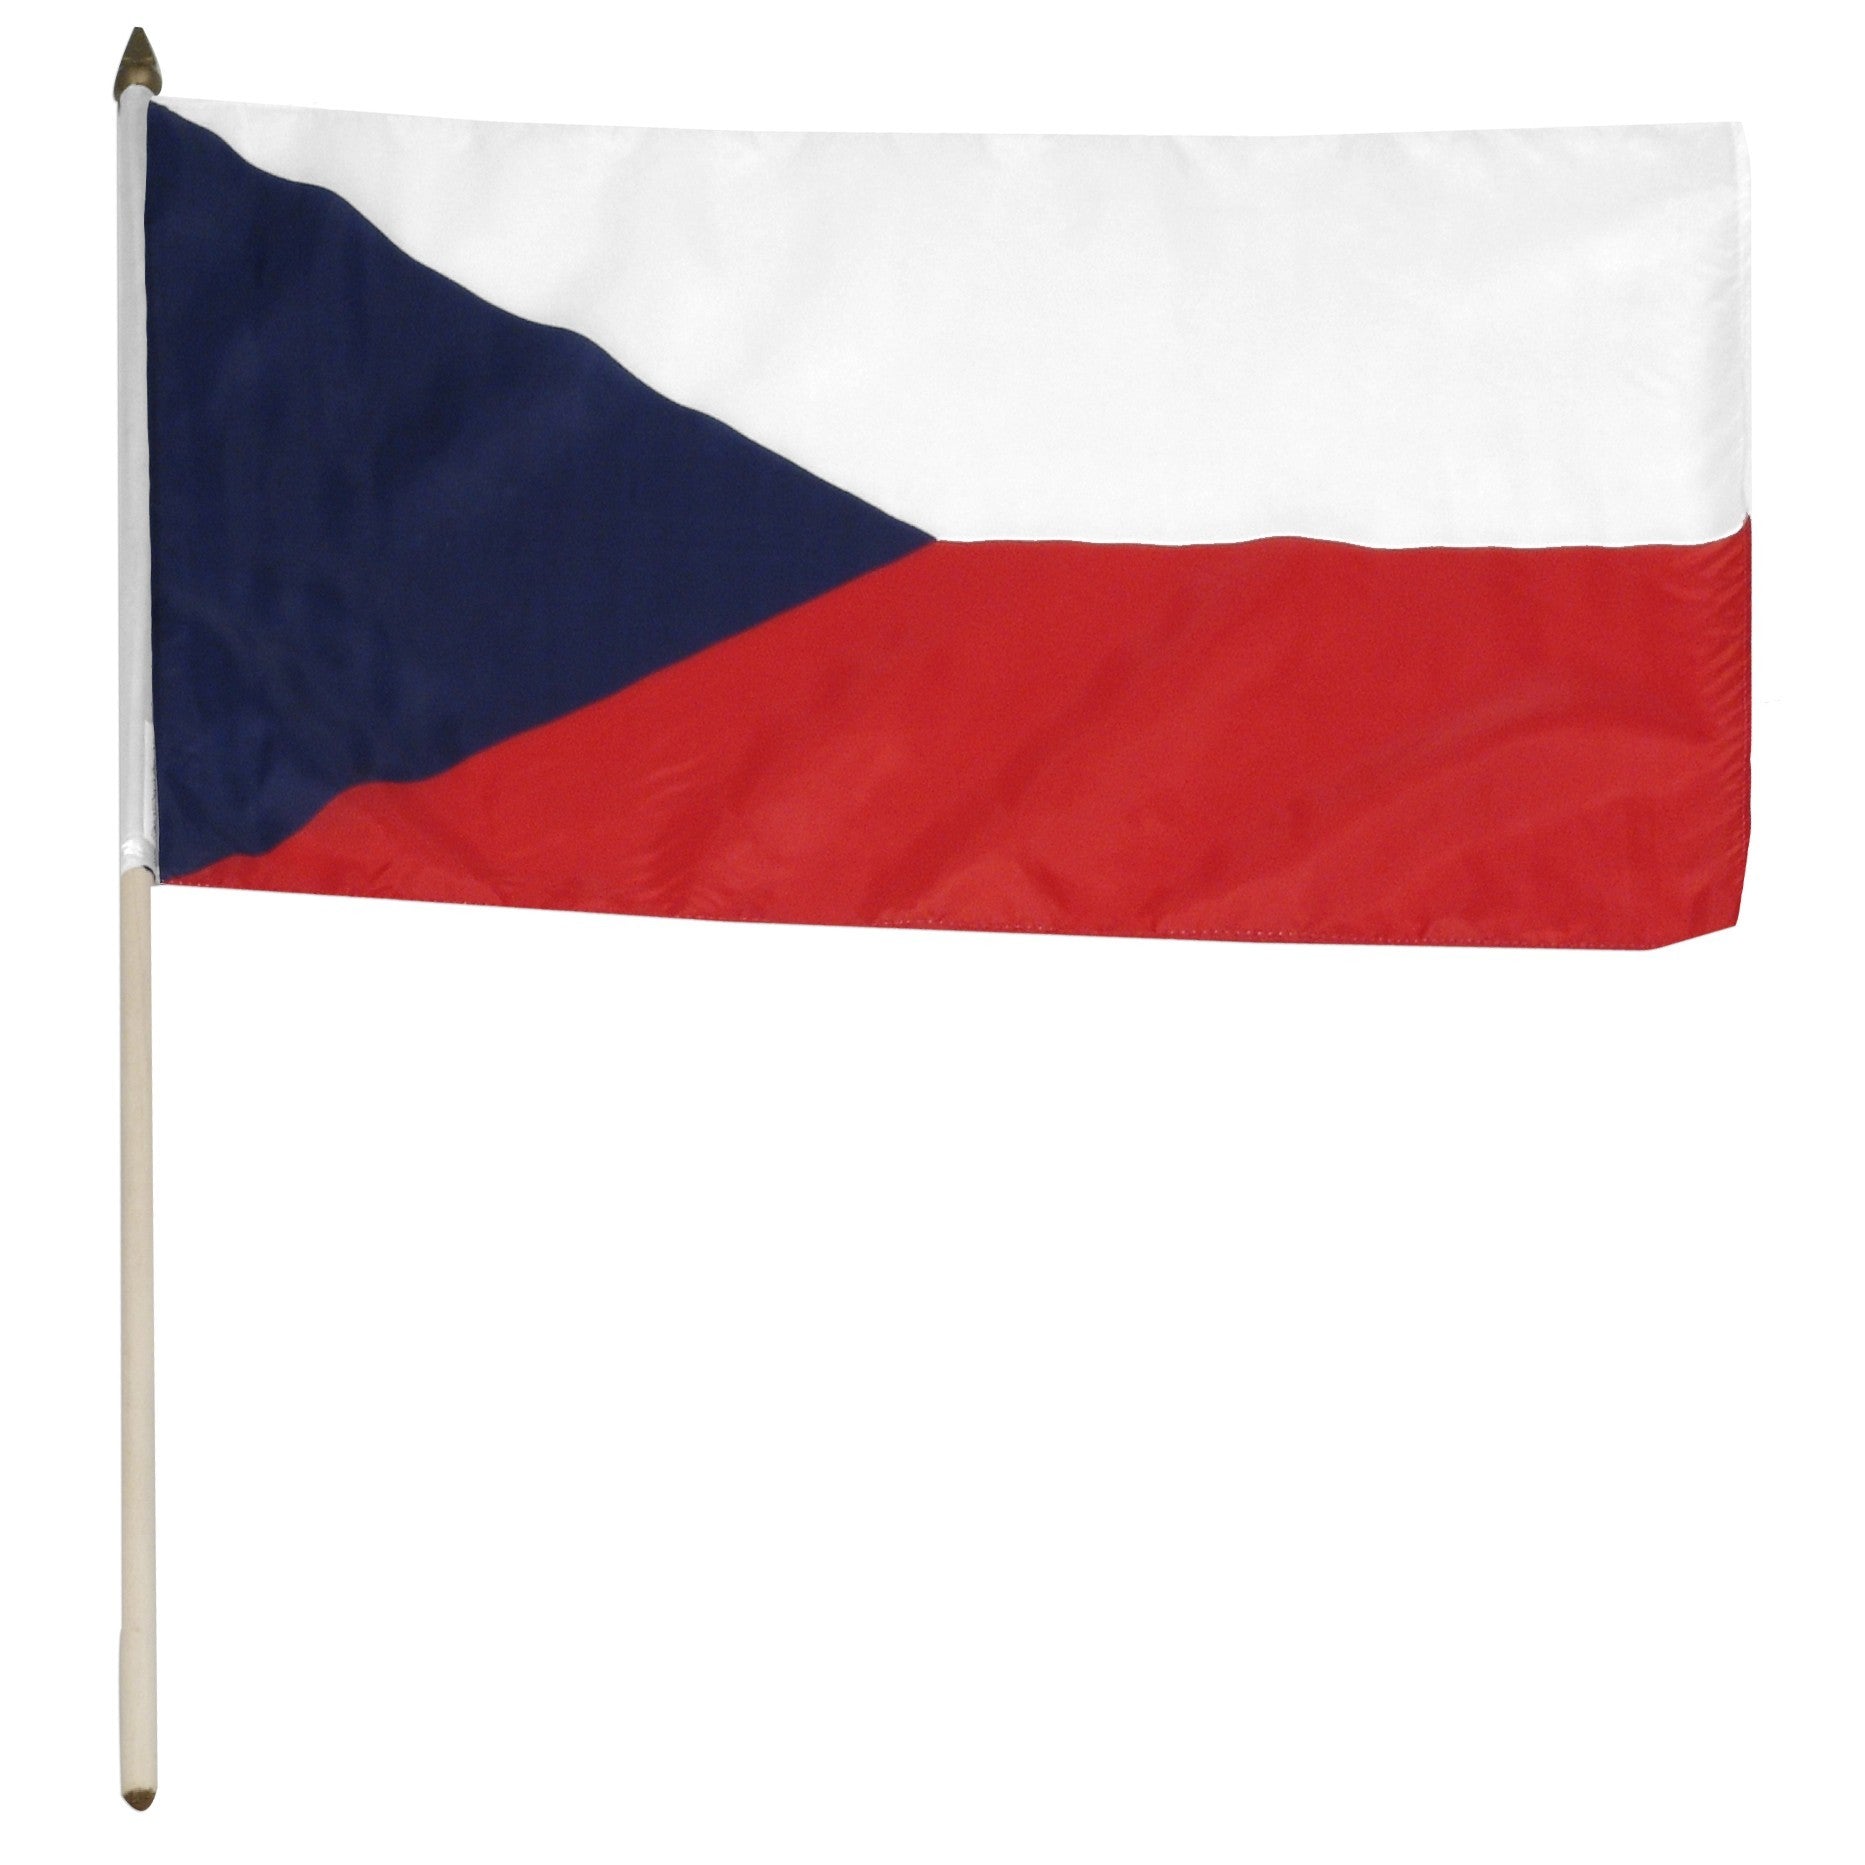 Czech Republic 12" x 18" Mounted Stick Flag